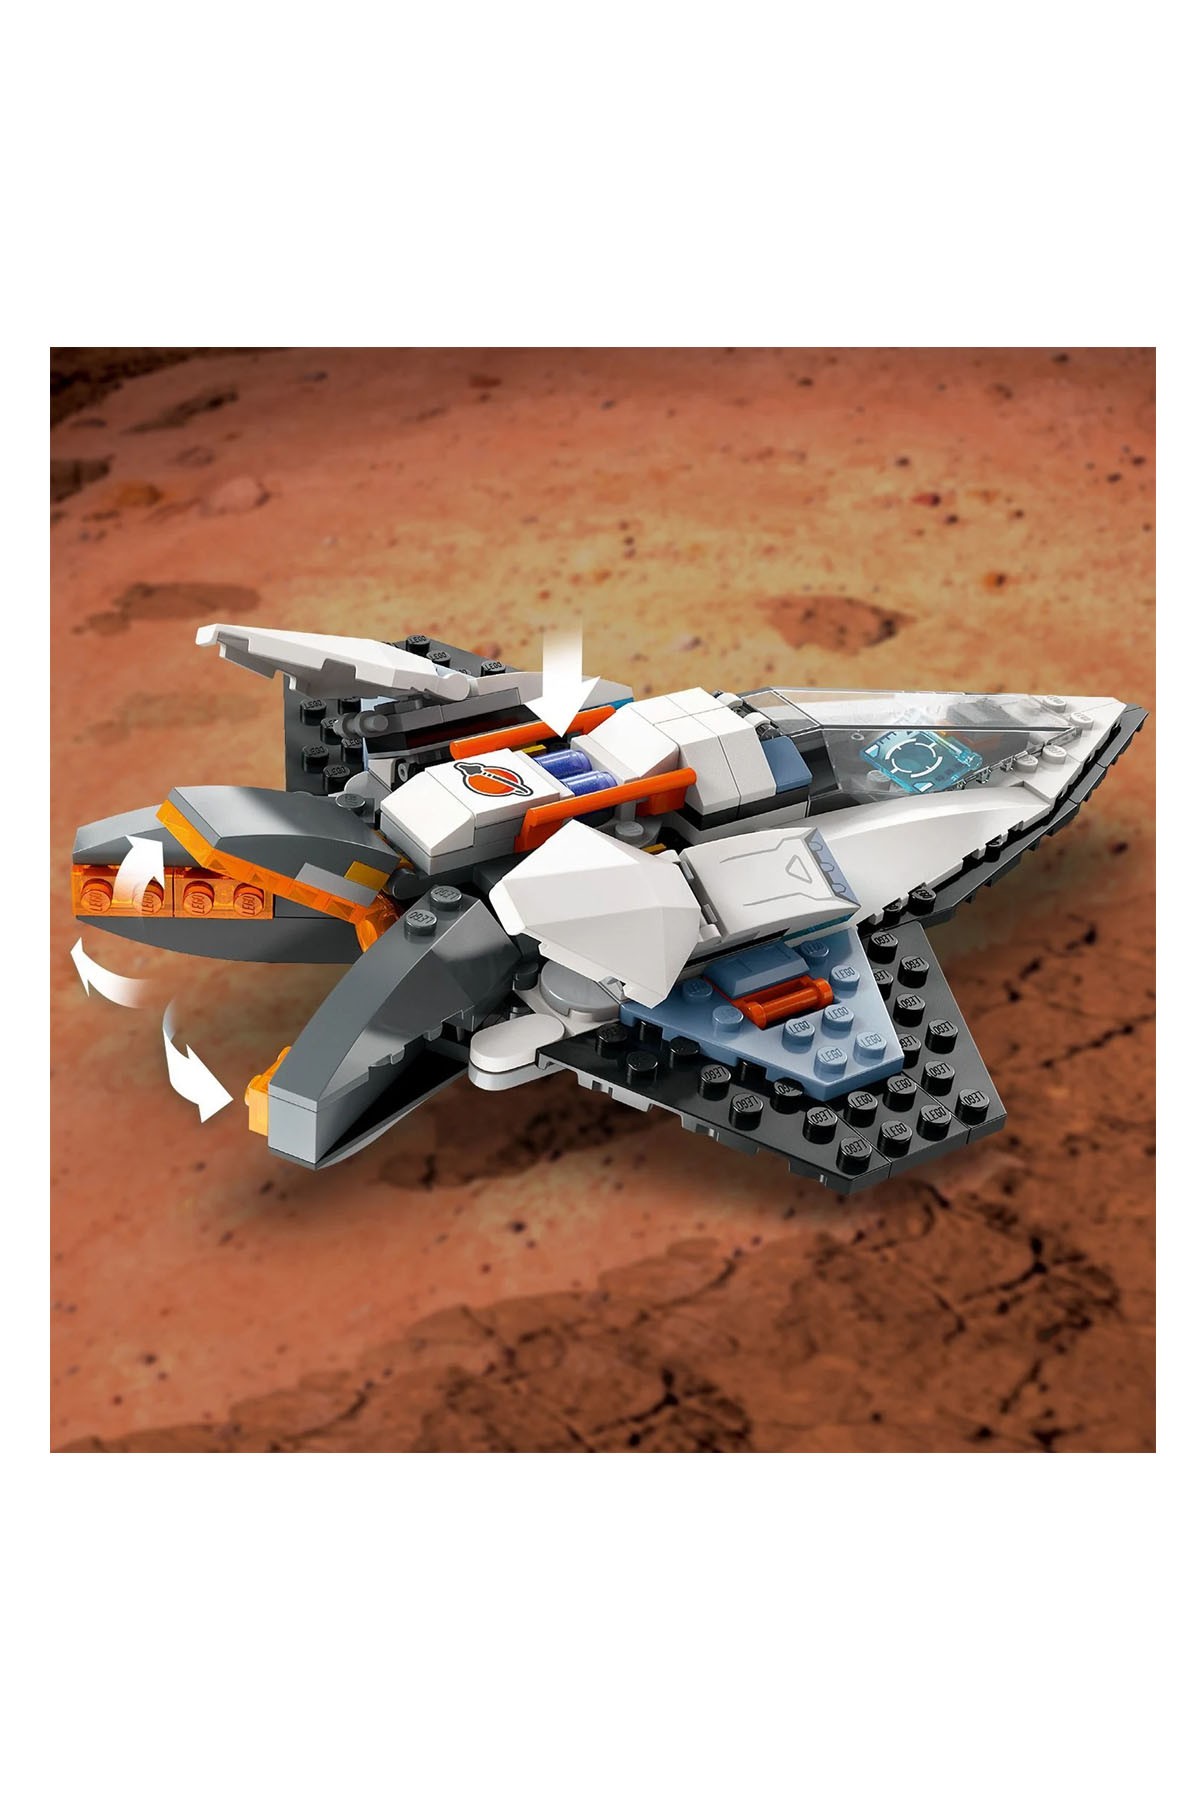 Lego City Yıldızlararası Uzay Gemisi 60430